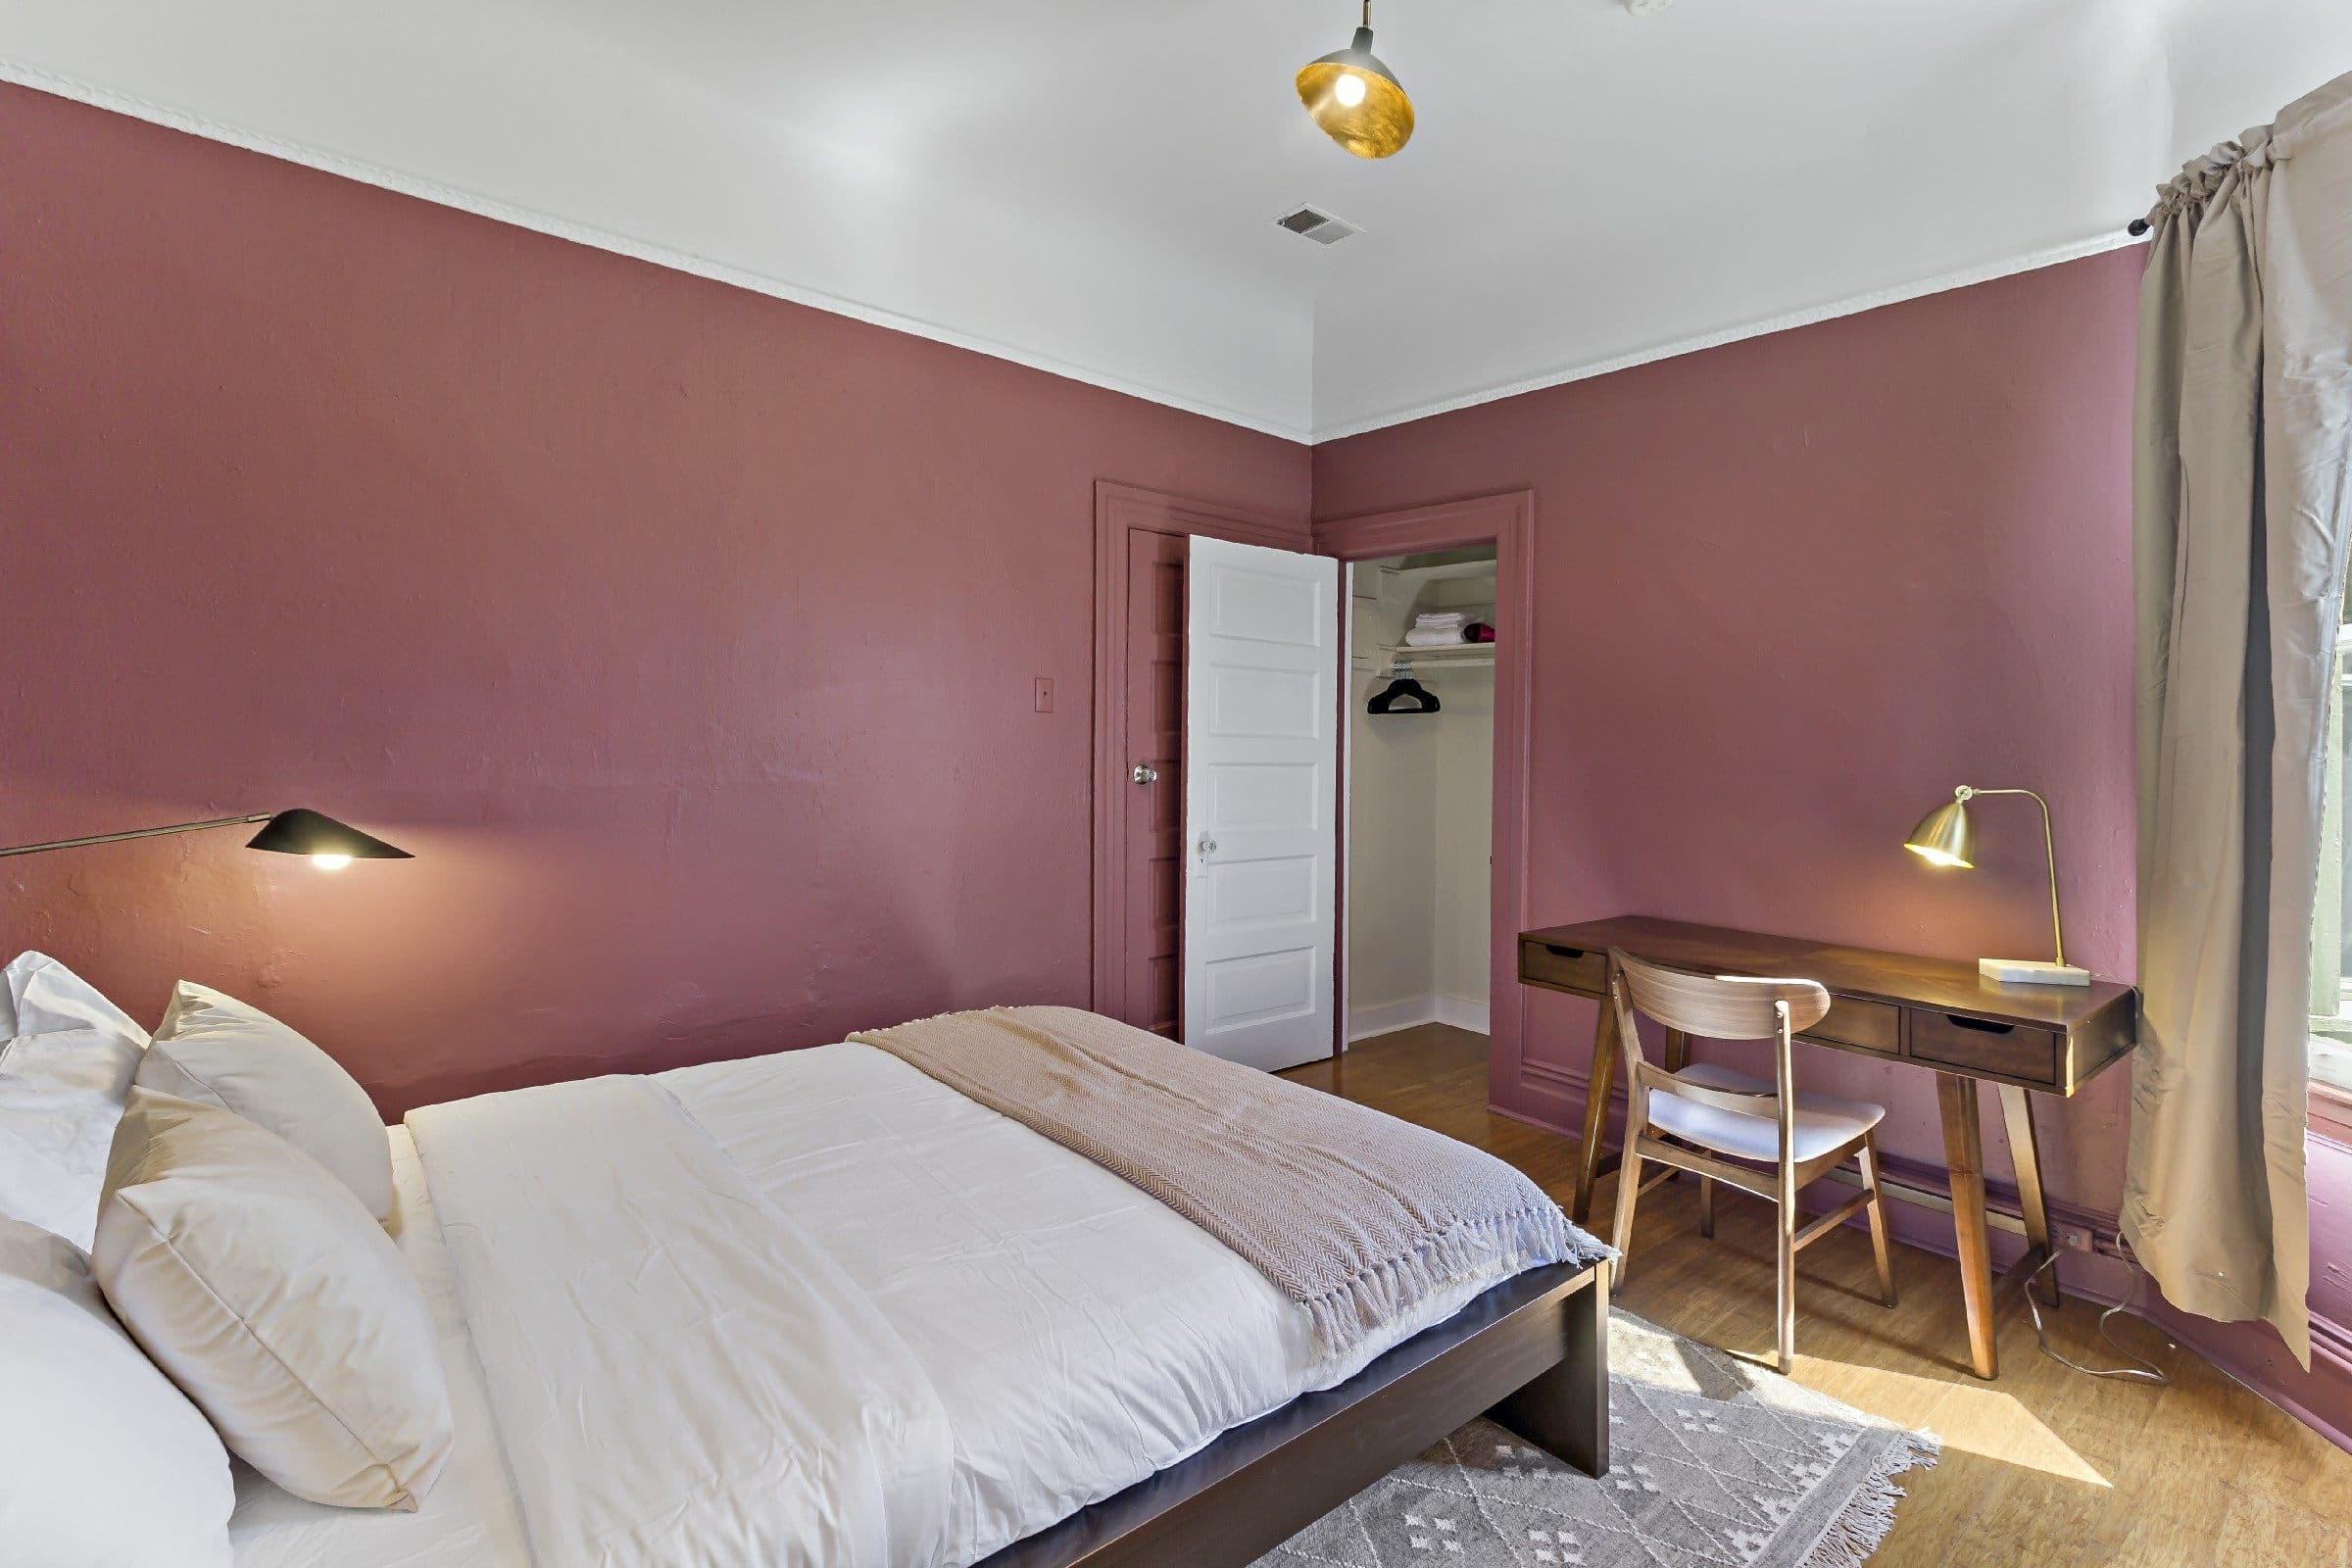 Photo 16 of #902: Queen Bedroom B at June Homes